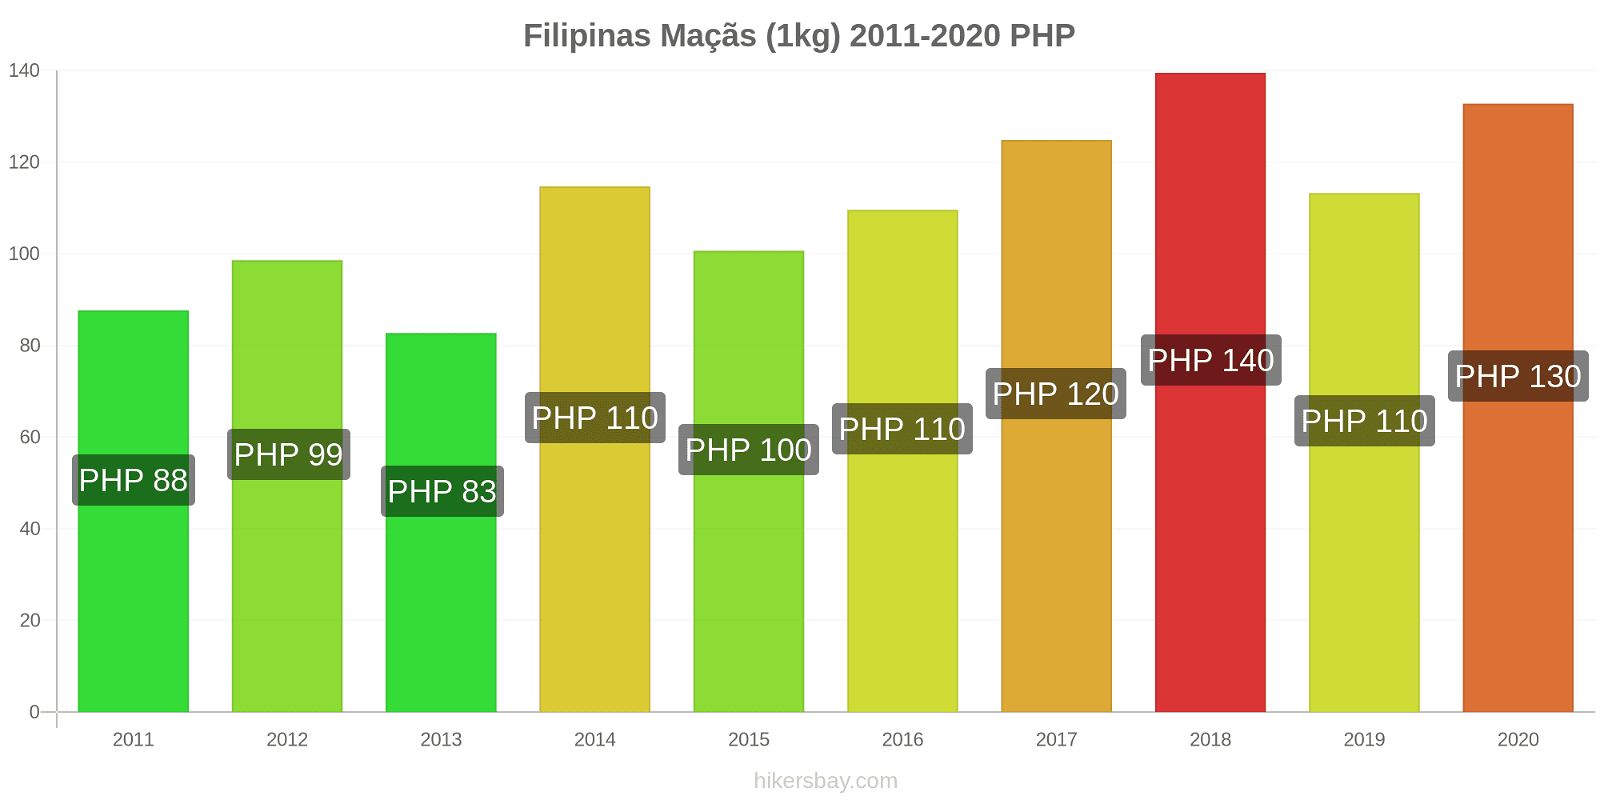 Filipinas variação de preço Maçãs (1kg) hikersbay.com